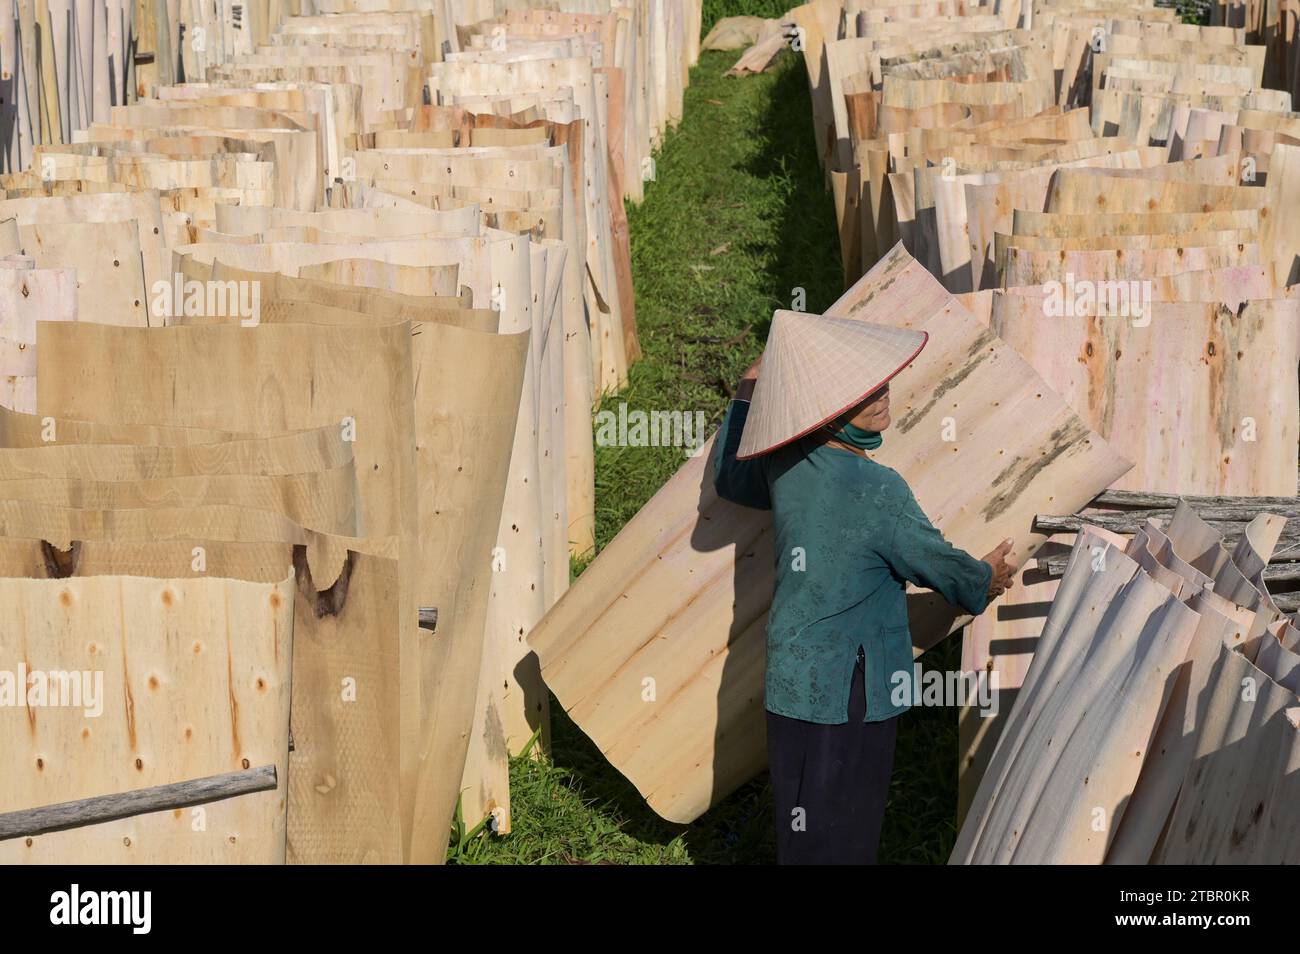 VIETNAM, Provinz Yen Bai, Dorf Cam Nhan, Frau trockene dünne Holzplatten, die zu Sperrholz verarbeitet werden / Frau trocknet hauchdünne Holzplatten aus Plantagenholz die weiter zu Sperrholz und Leimholz verarbeitet werden Stockfoto